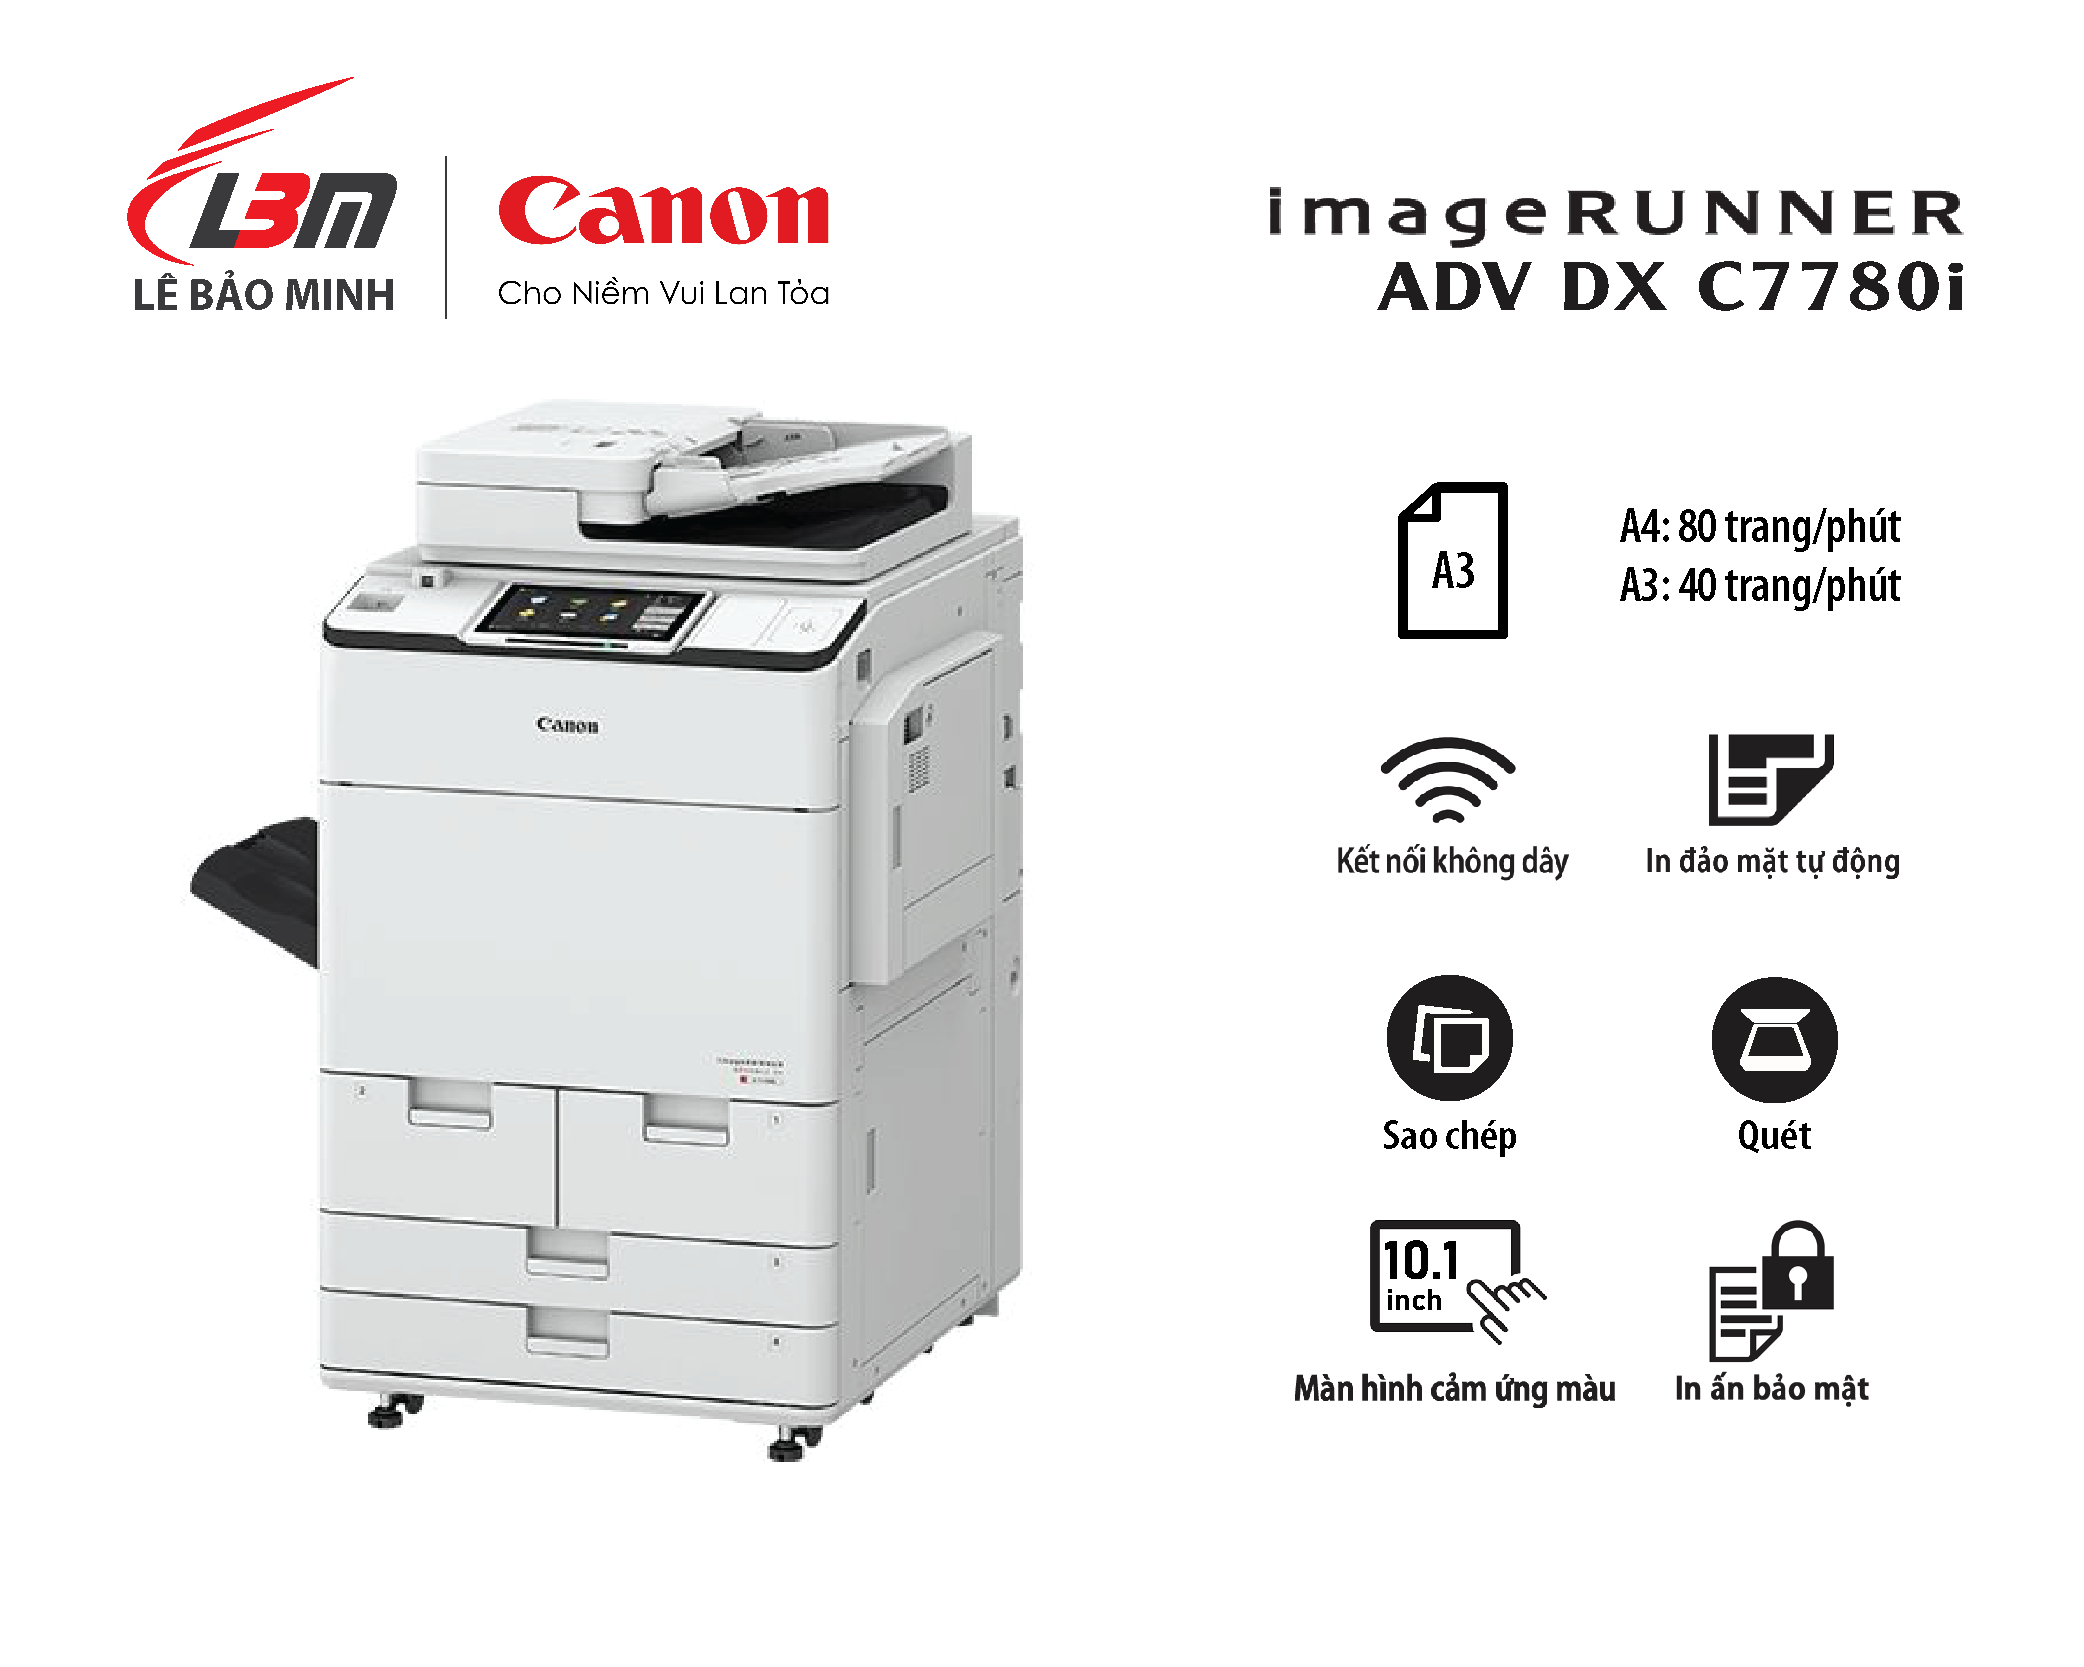 Photocopy iR-ADV DX C7780i